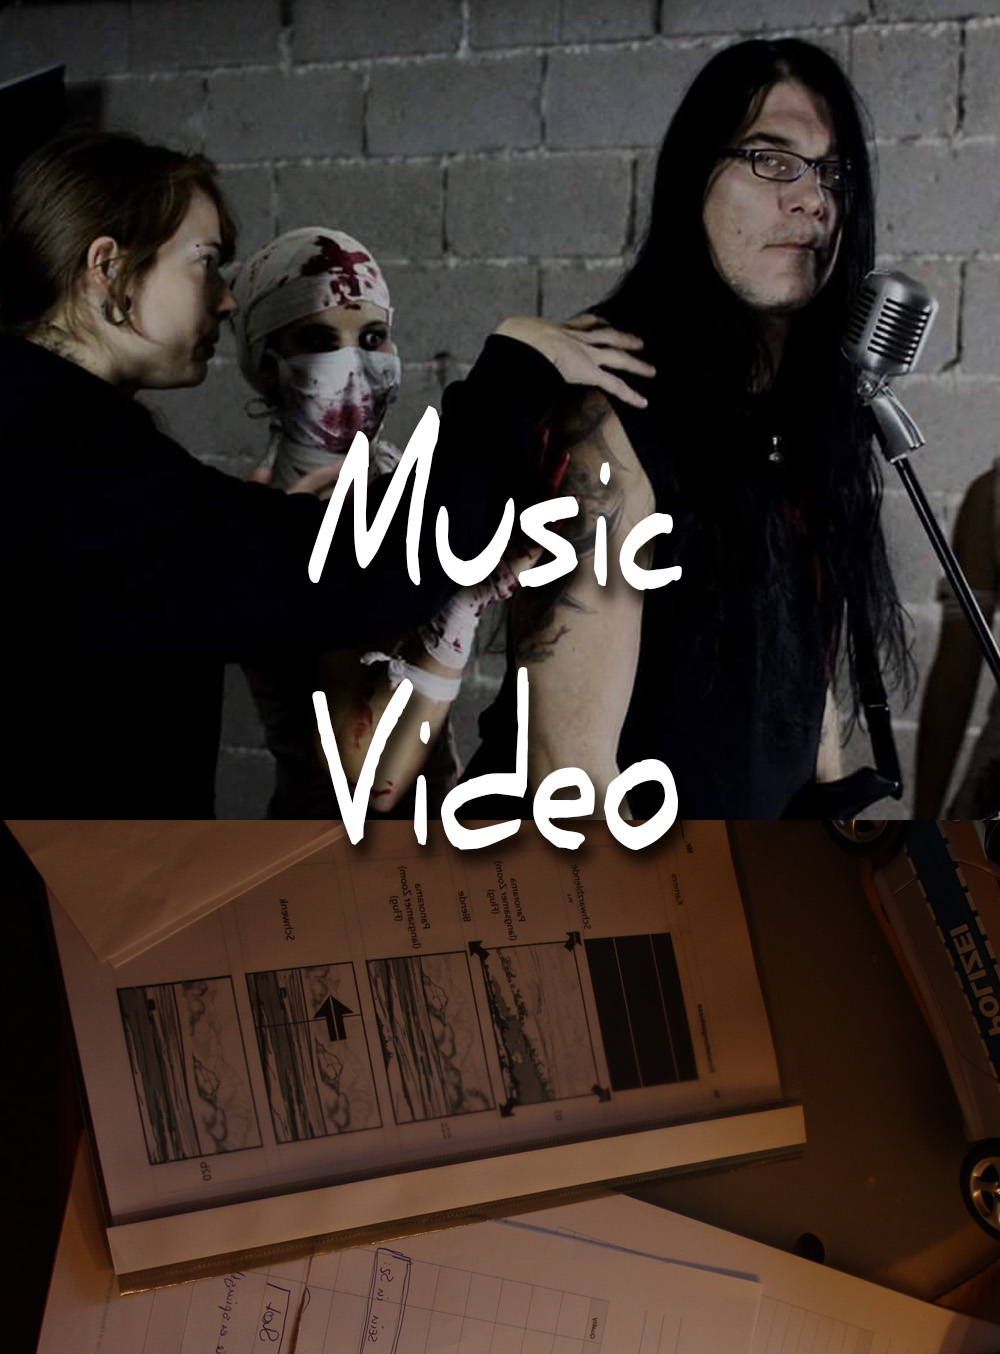 linkbild-animatedartart-annajaegerhauer-linestyleartwork-musikvideo-noai-humanartist-digitalart-animation-music-video